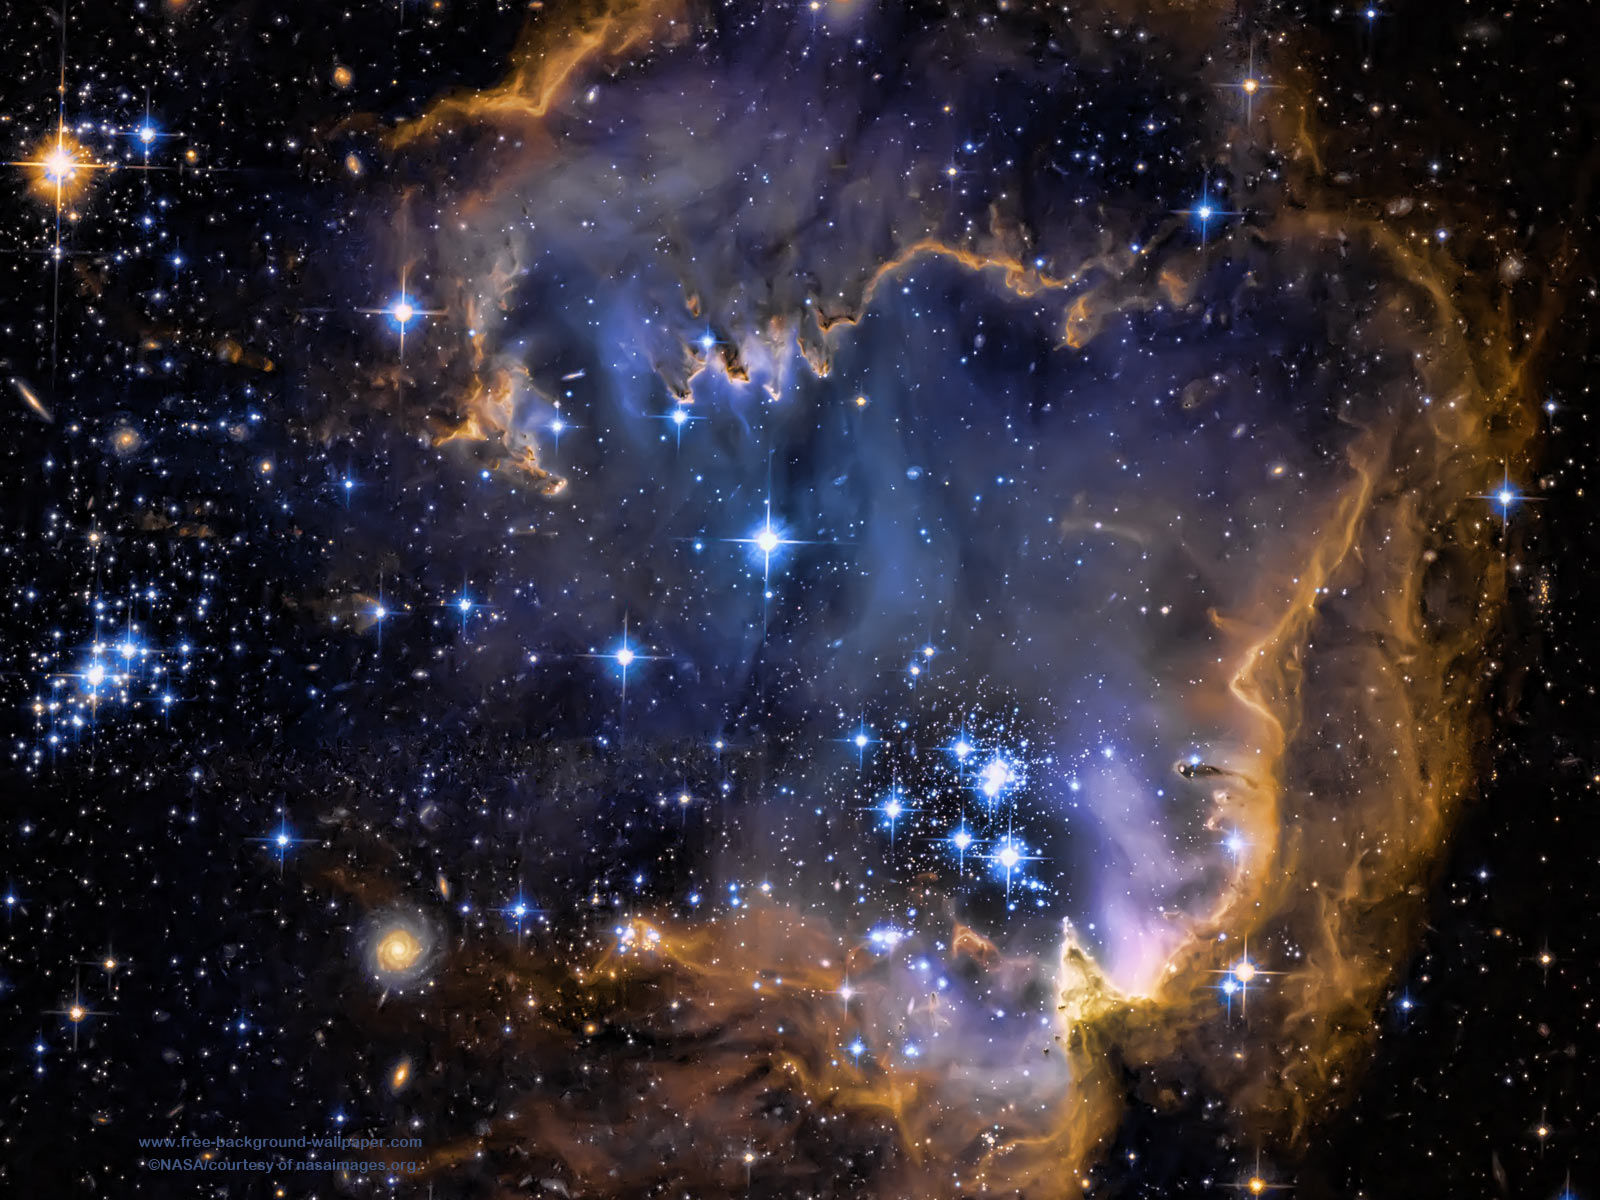 Galaxy Infant Stars Stars Background Wallpaper 1600x1200 pixels